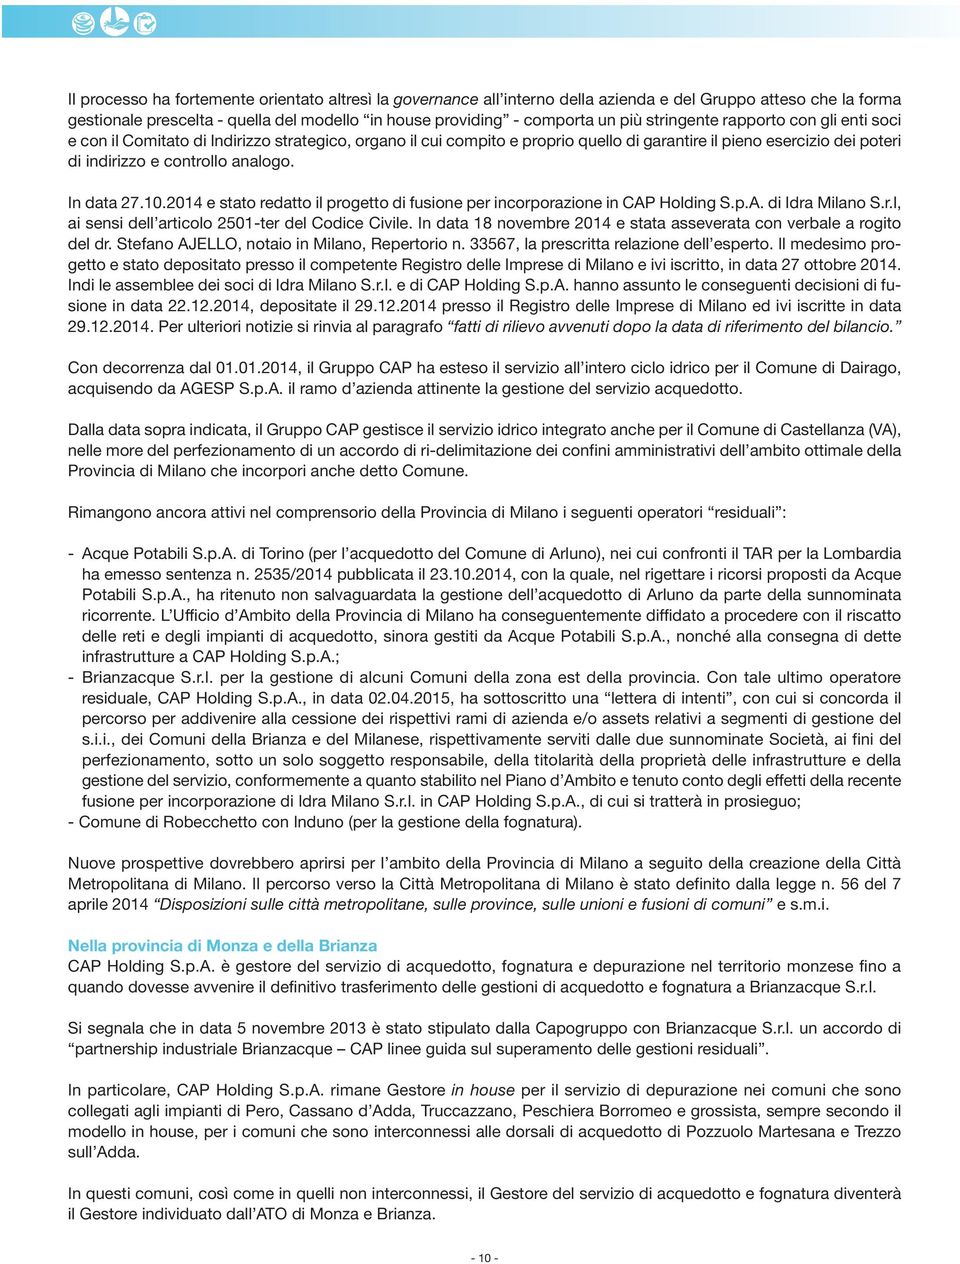 In data 27.10.2014 e stato redatto il progetto di fusione per incorporazione in CAP Holding S.p.A. di Idra Milano S.r.l, ai sensi dell articolo 2501-ter del Codice Civile.